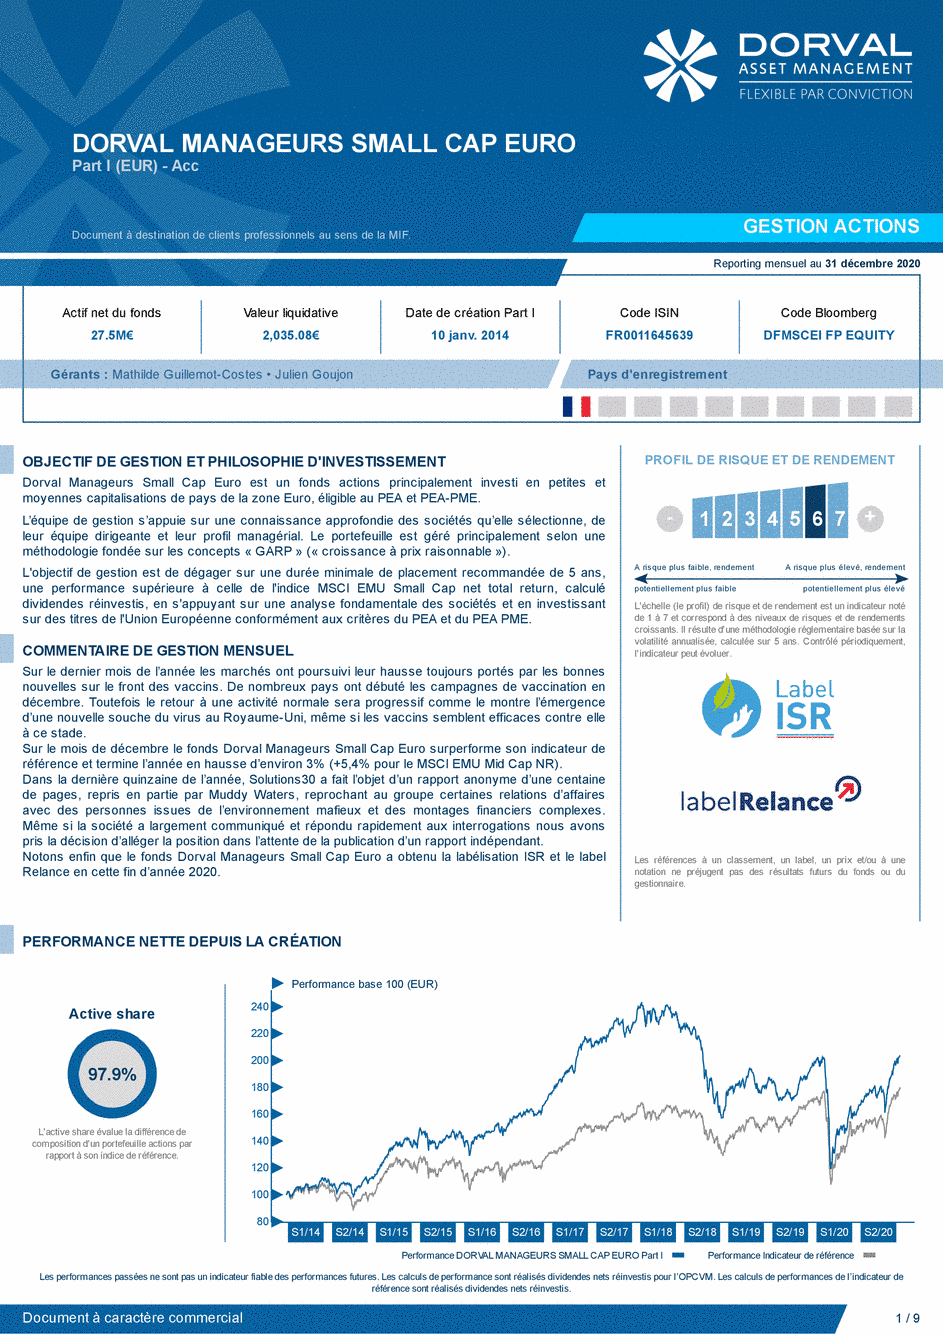 Reporting DORVAL MANAGEURS SMALL CAP EURO Part I - 31/12/2020 - Français